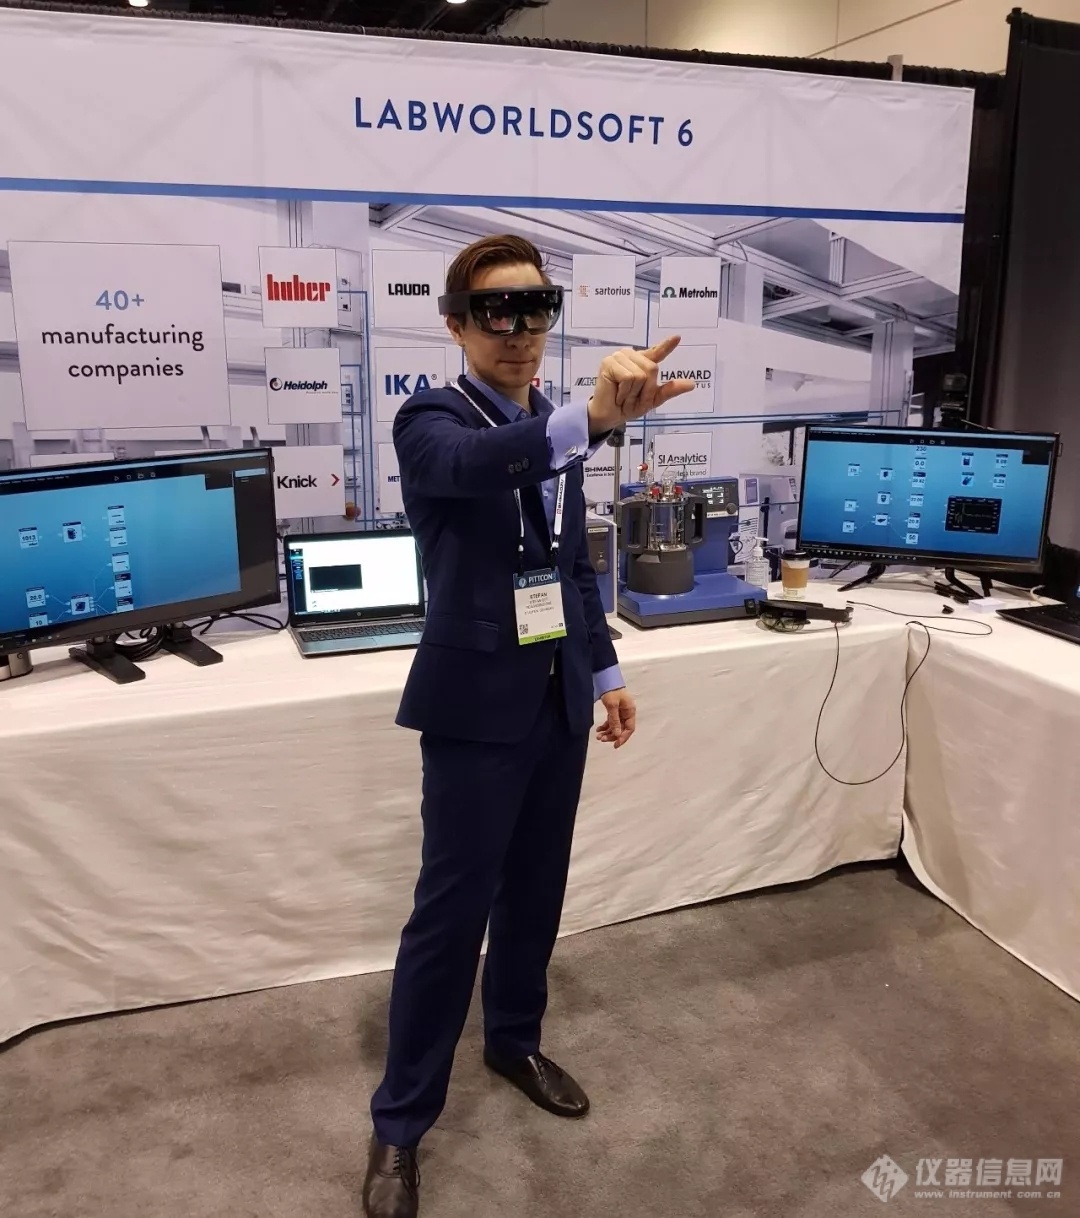 精工科研产业的VR技术全球首次亮相美国Pittcon大展